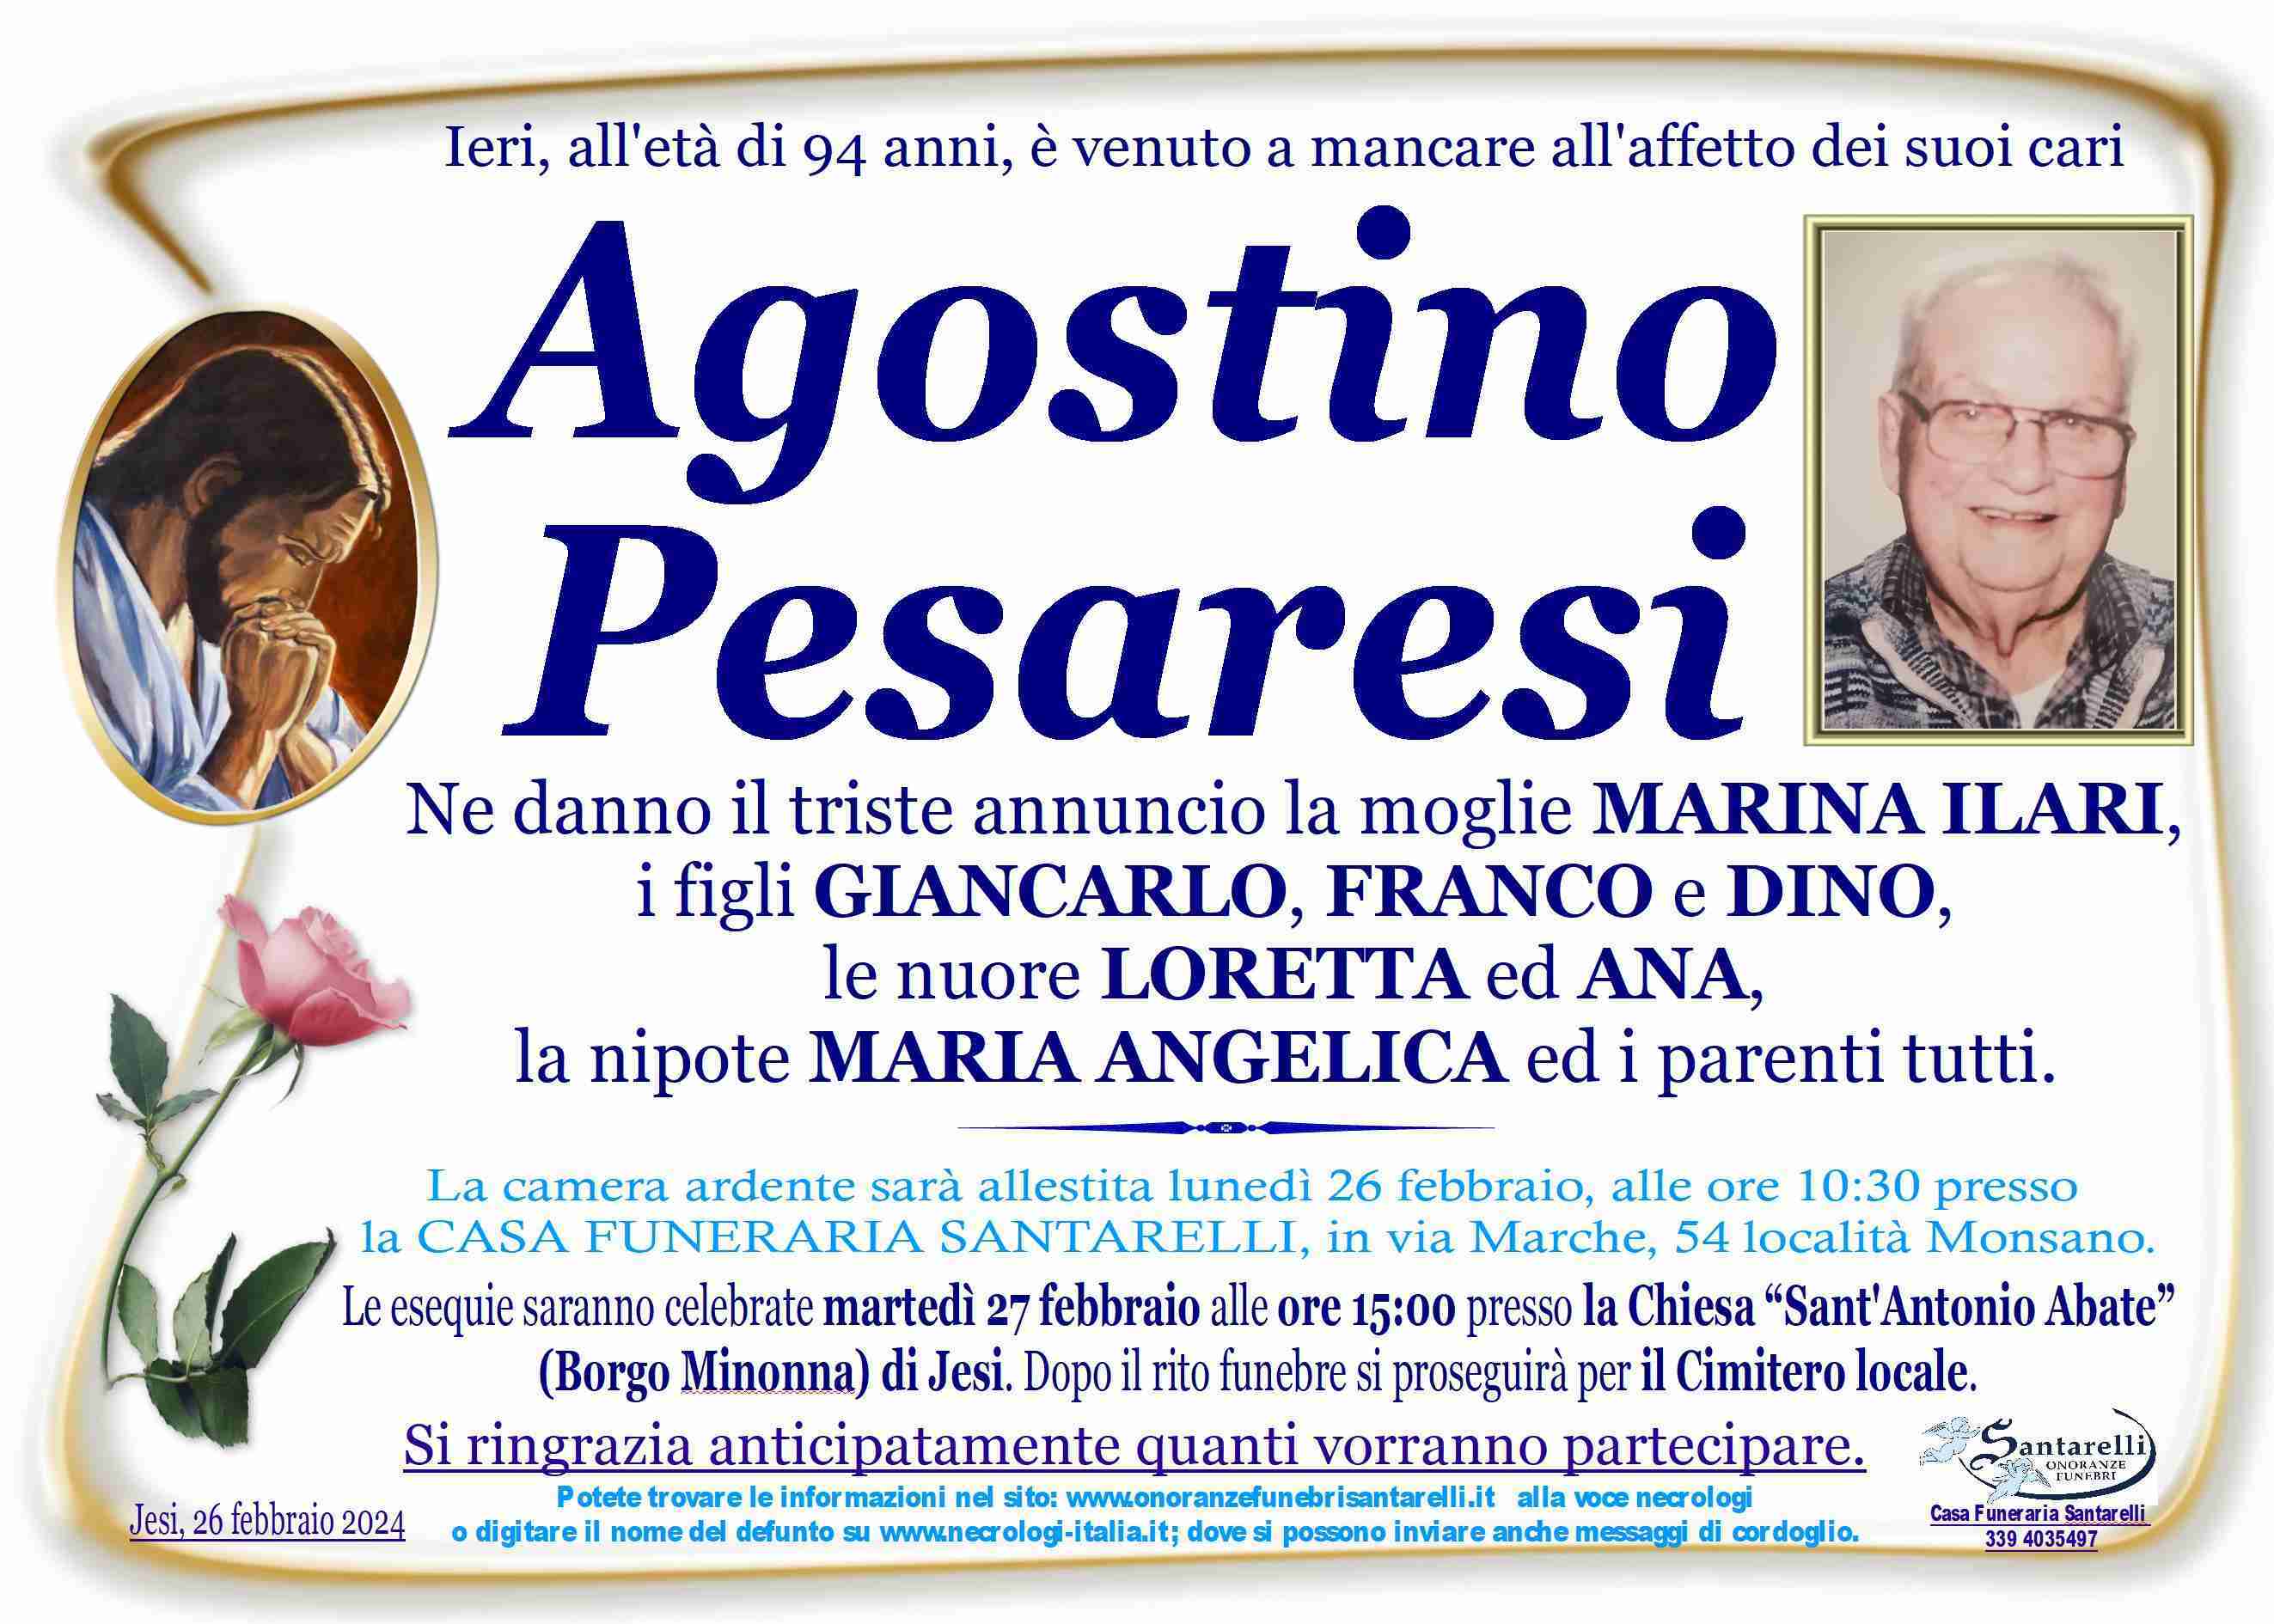 Agostino Pesaresi